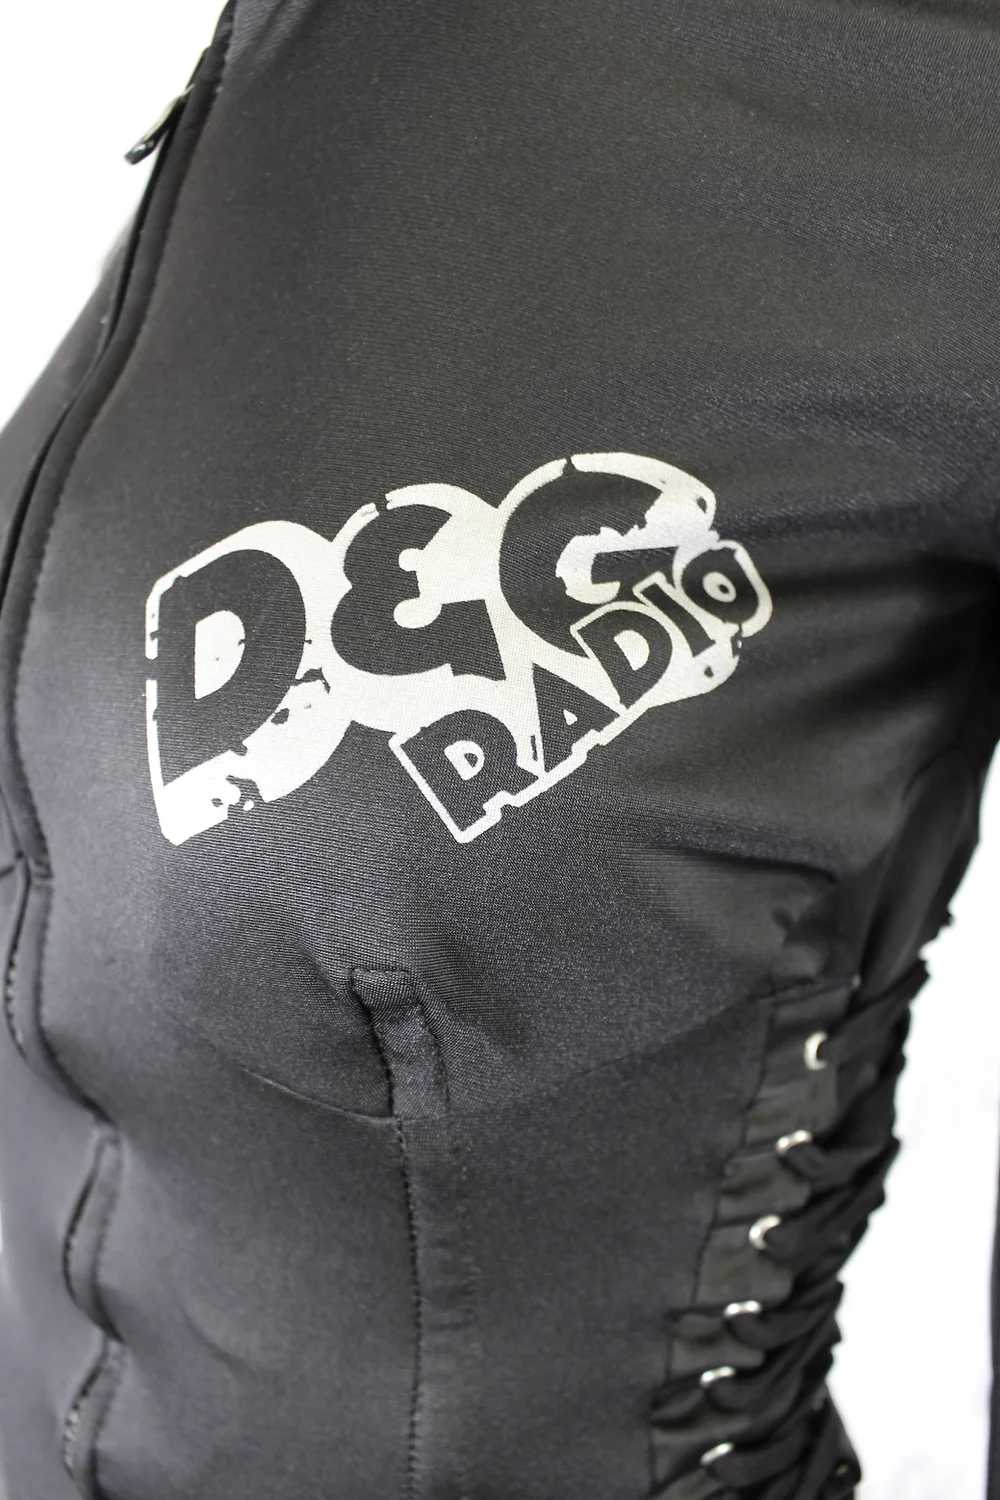 Dolce & Gabbana Black Corset Lace Up Jacket - image 5